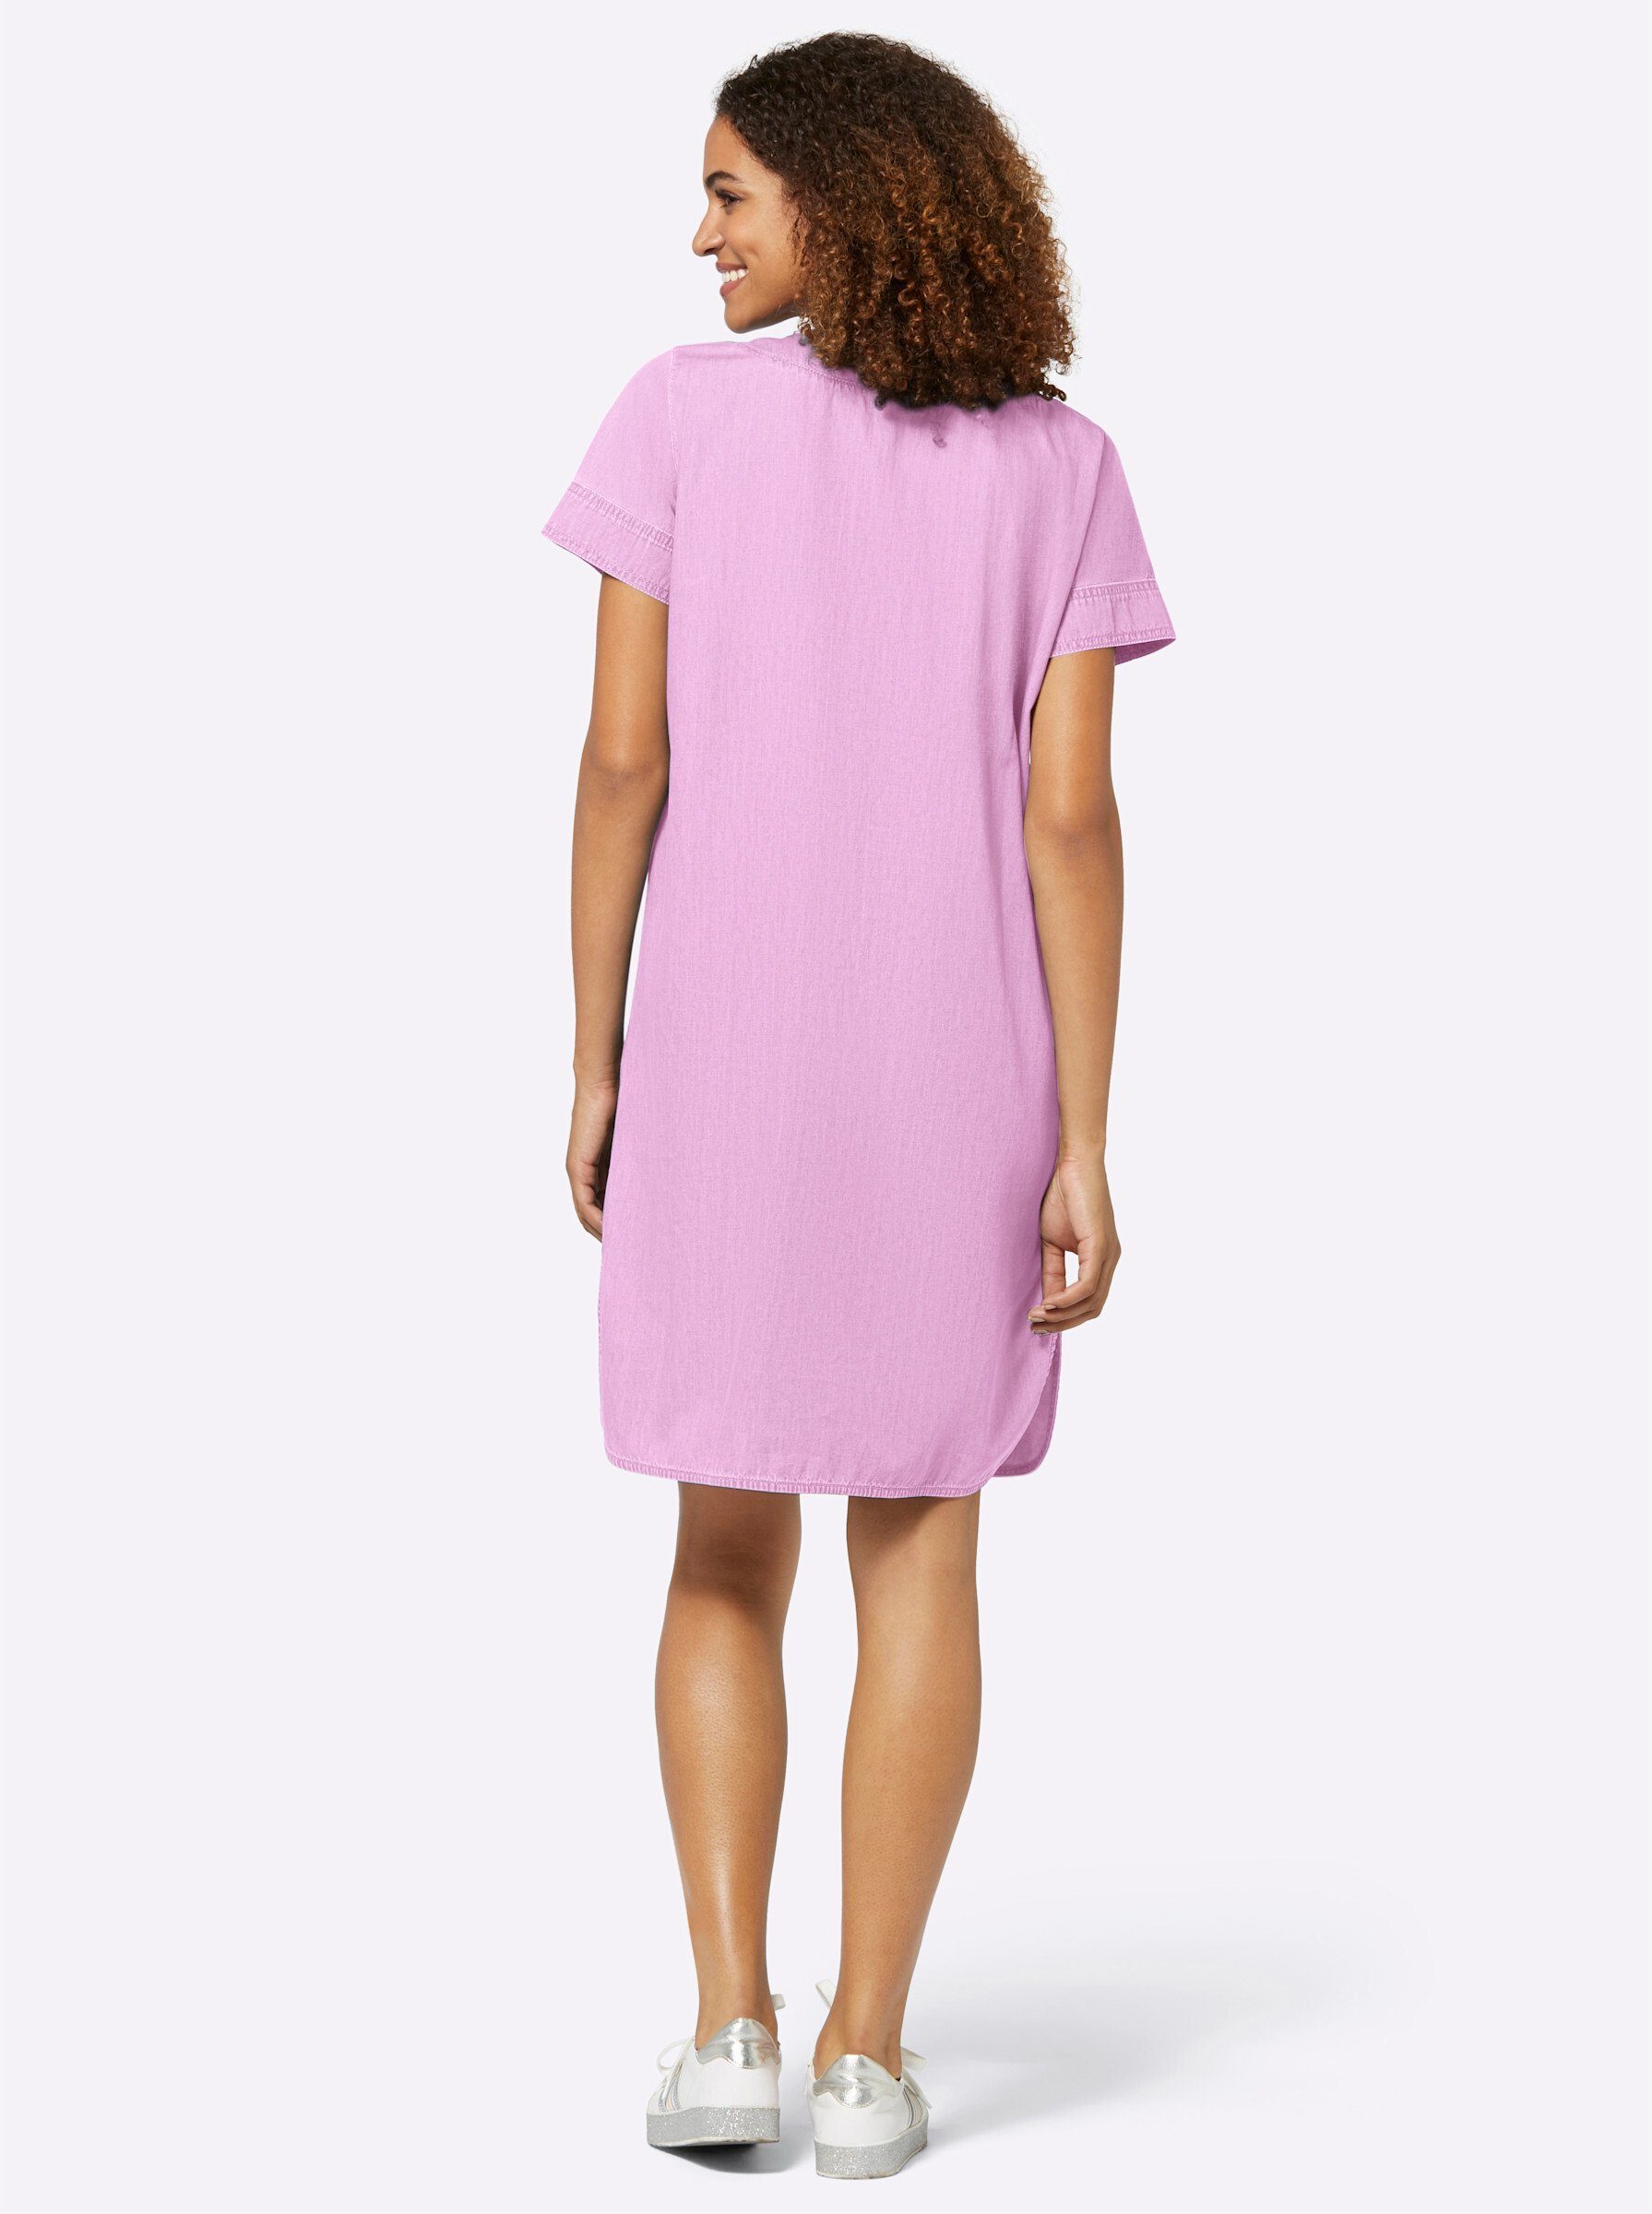 Rosa knielange Sommerkleider für Damen online kaufen | OTTO | Sommerkleider